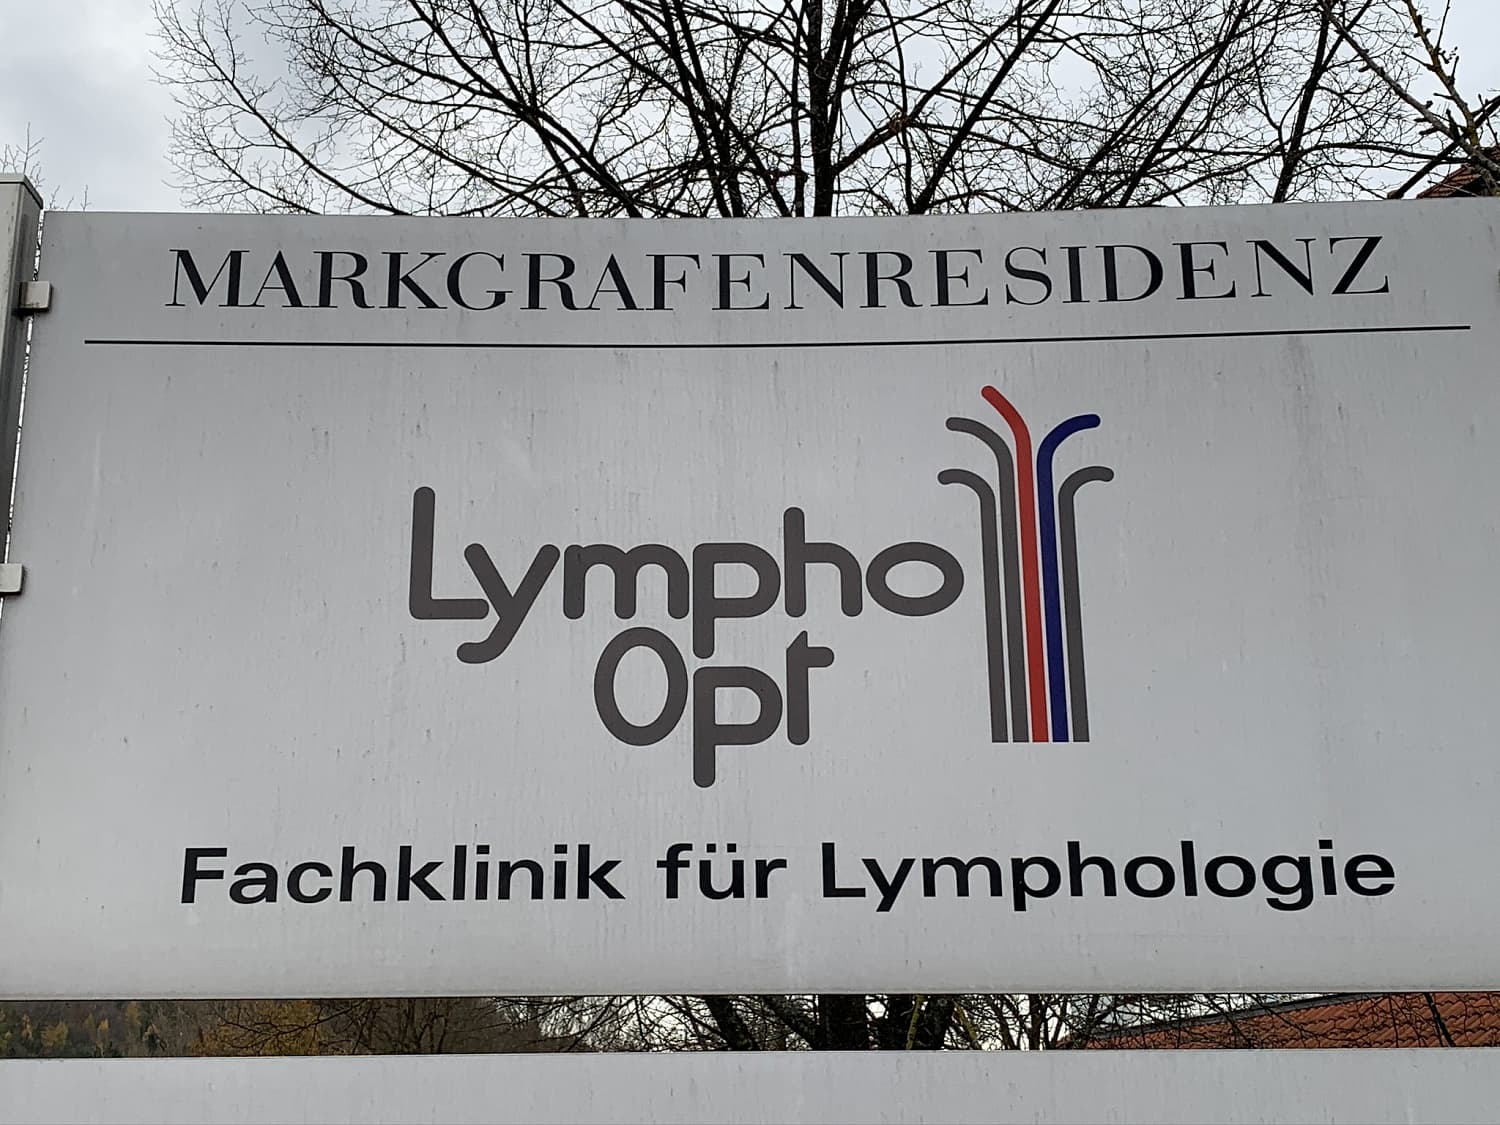 15-16 ноября 2019 г. Ремезов Андрей Владимирович (врач-хирург Центра амбулаторной хирургии) стажировался в клинике Лимфологии Lymph-opt klinik (Германия) 